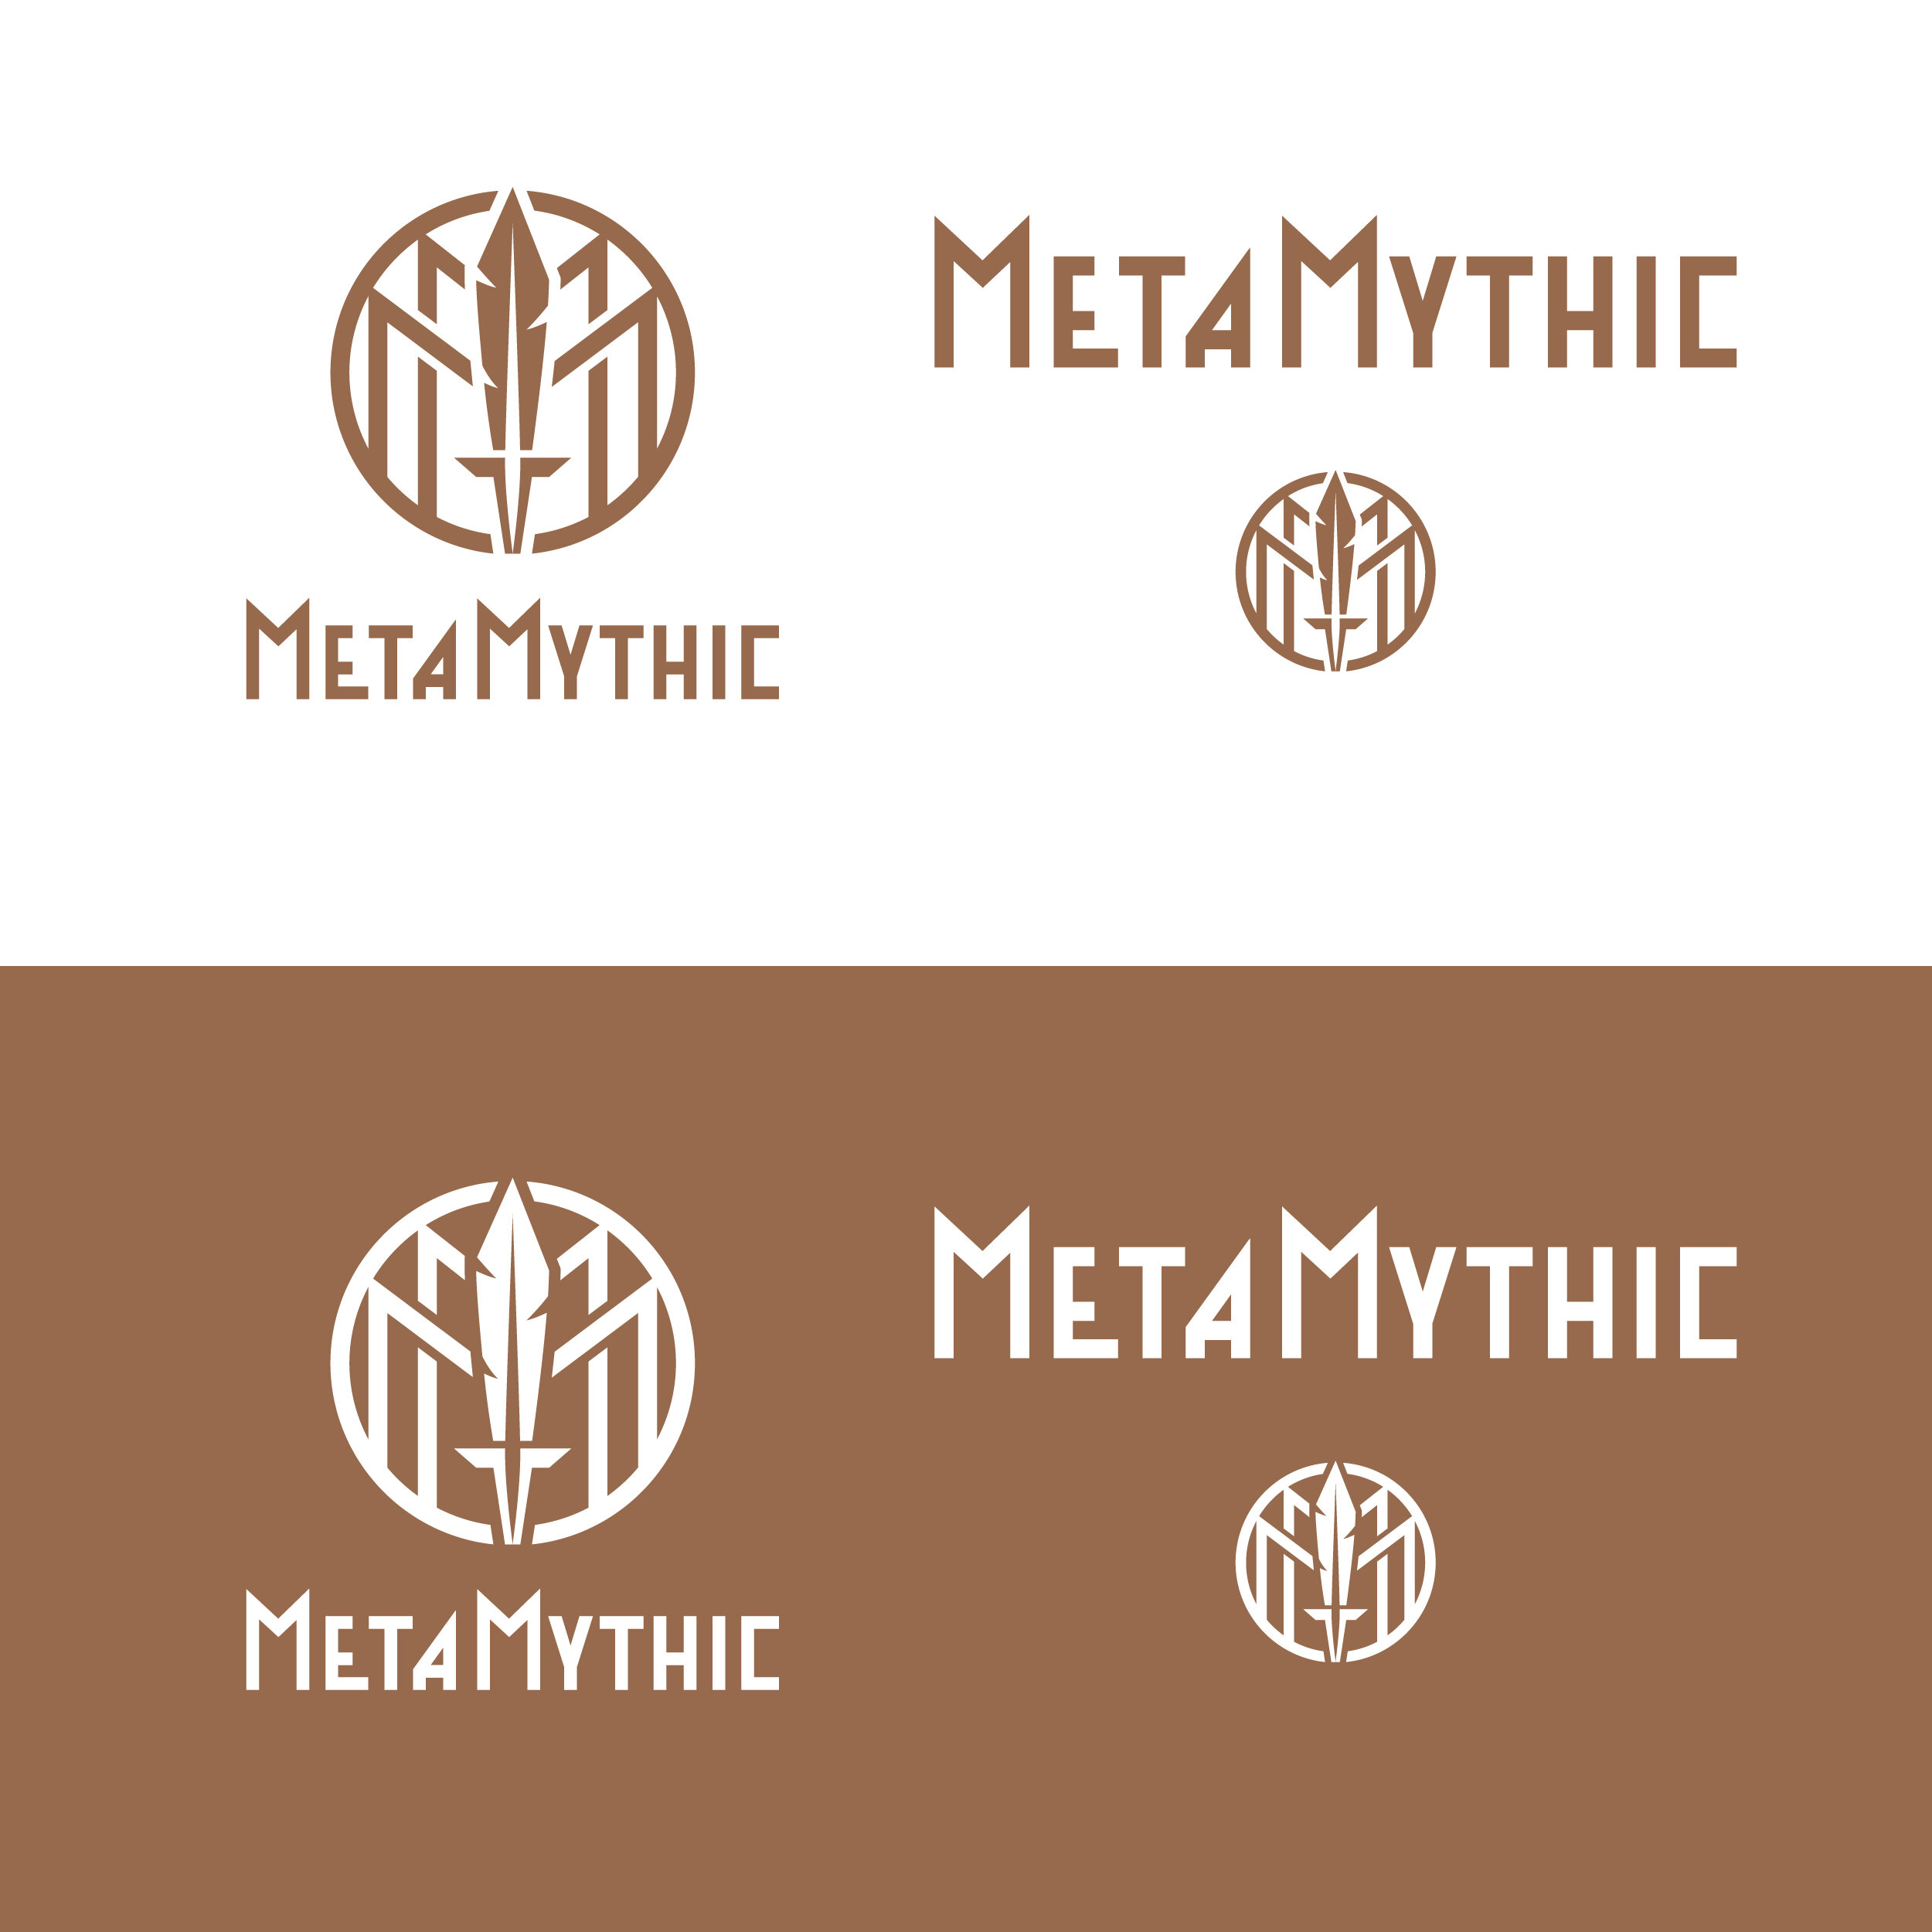 MetaMythic-Branding_Logo-Family.jpg